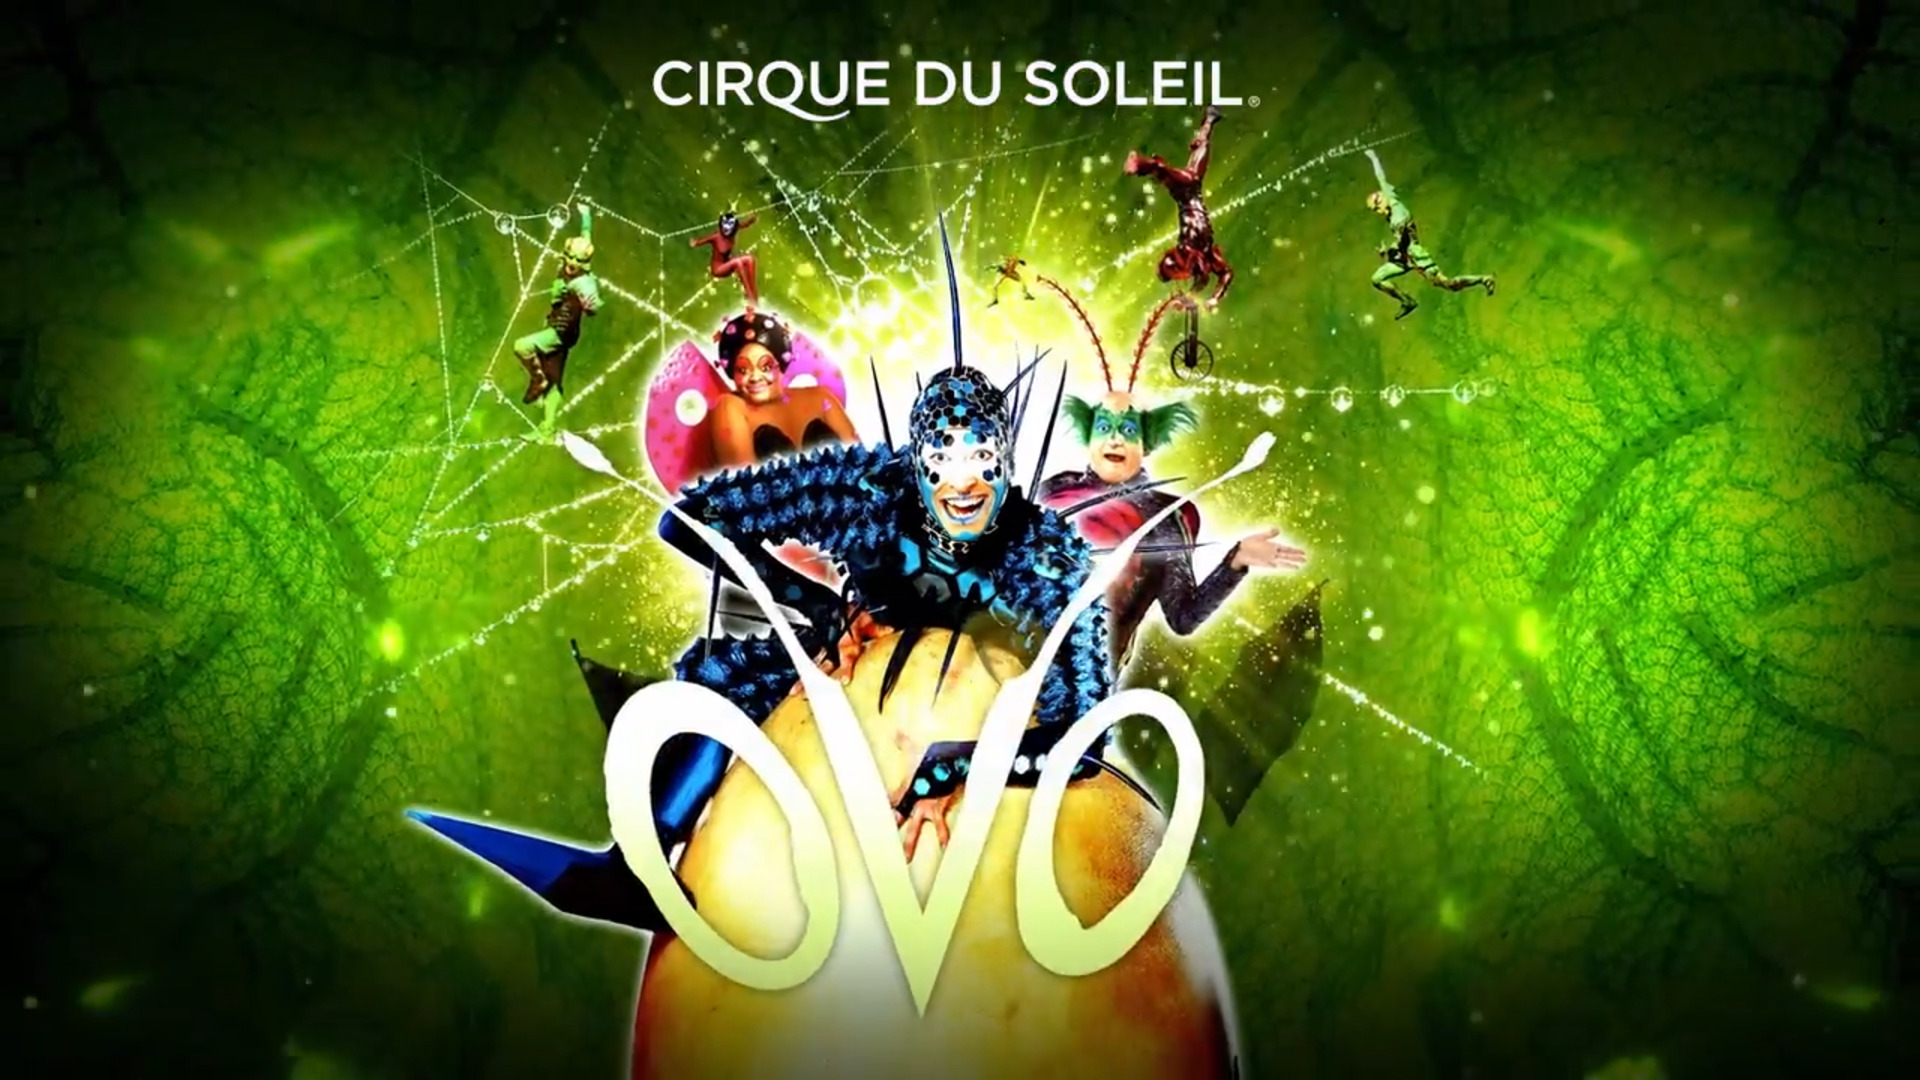 Cirque du Soleil: OVO
